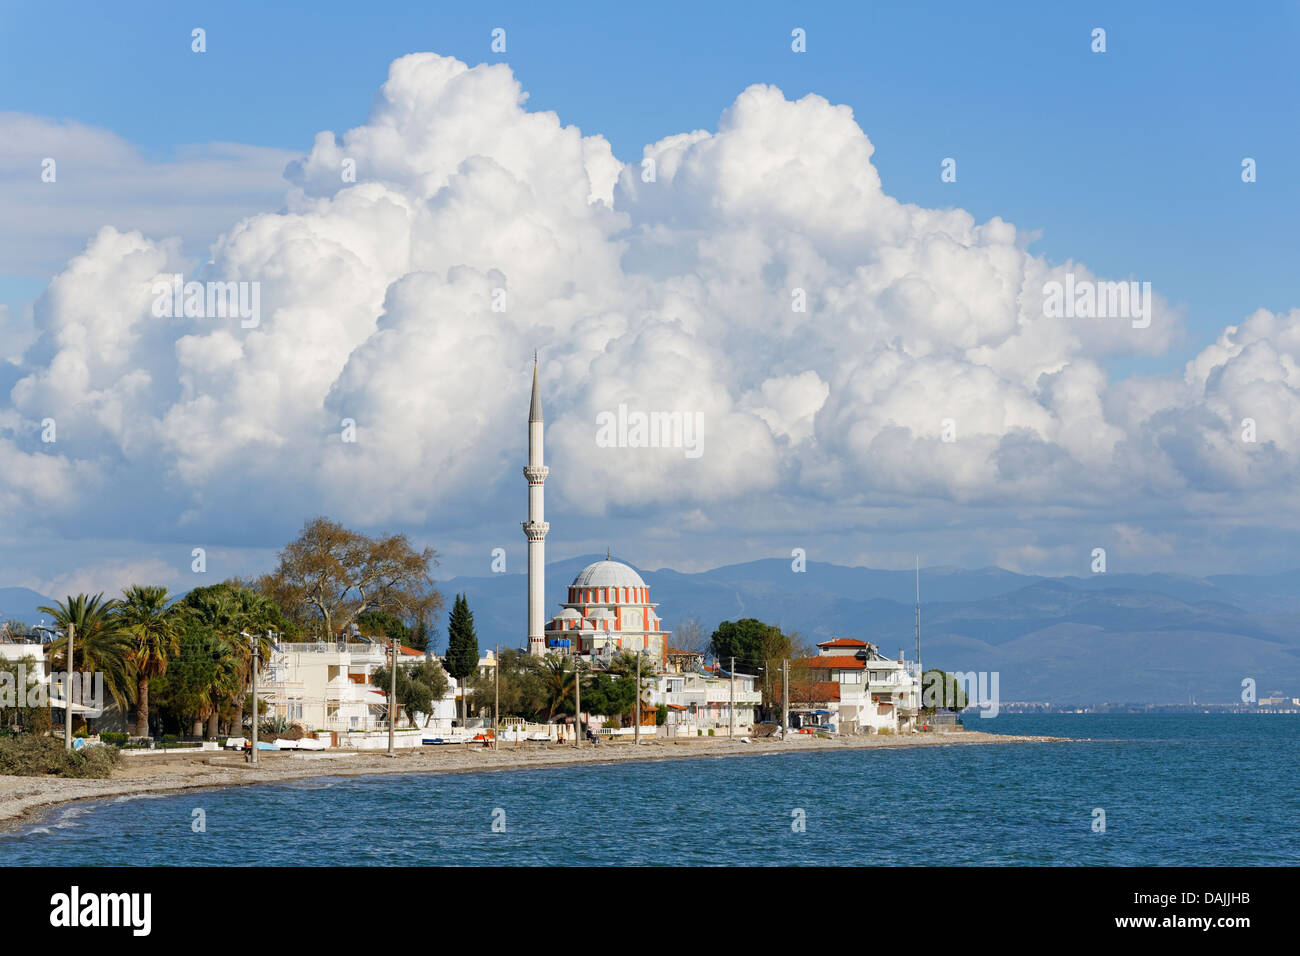 Turkey, View of Gulf of Edremit Stock Photo